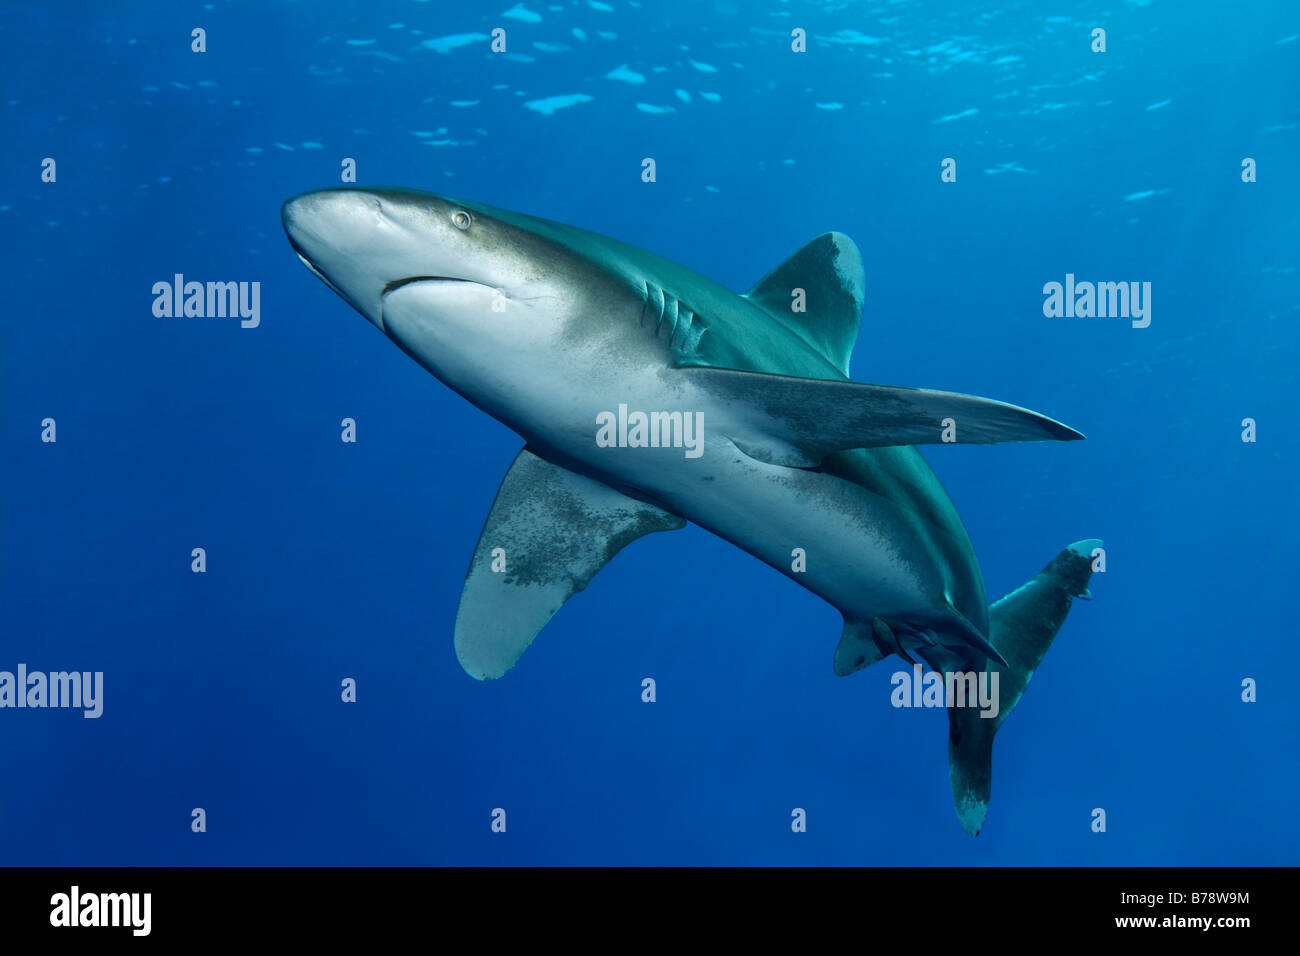 Requin océanique (Carcharhinus longimanus) dans l'eau bleue, Daedalus Reef, Hurghada, Red Sea, Egypt, Africa Banque D'Images